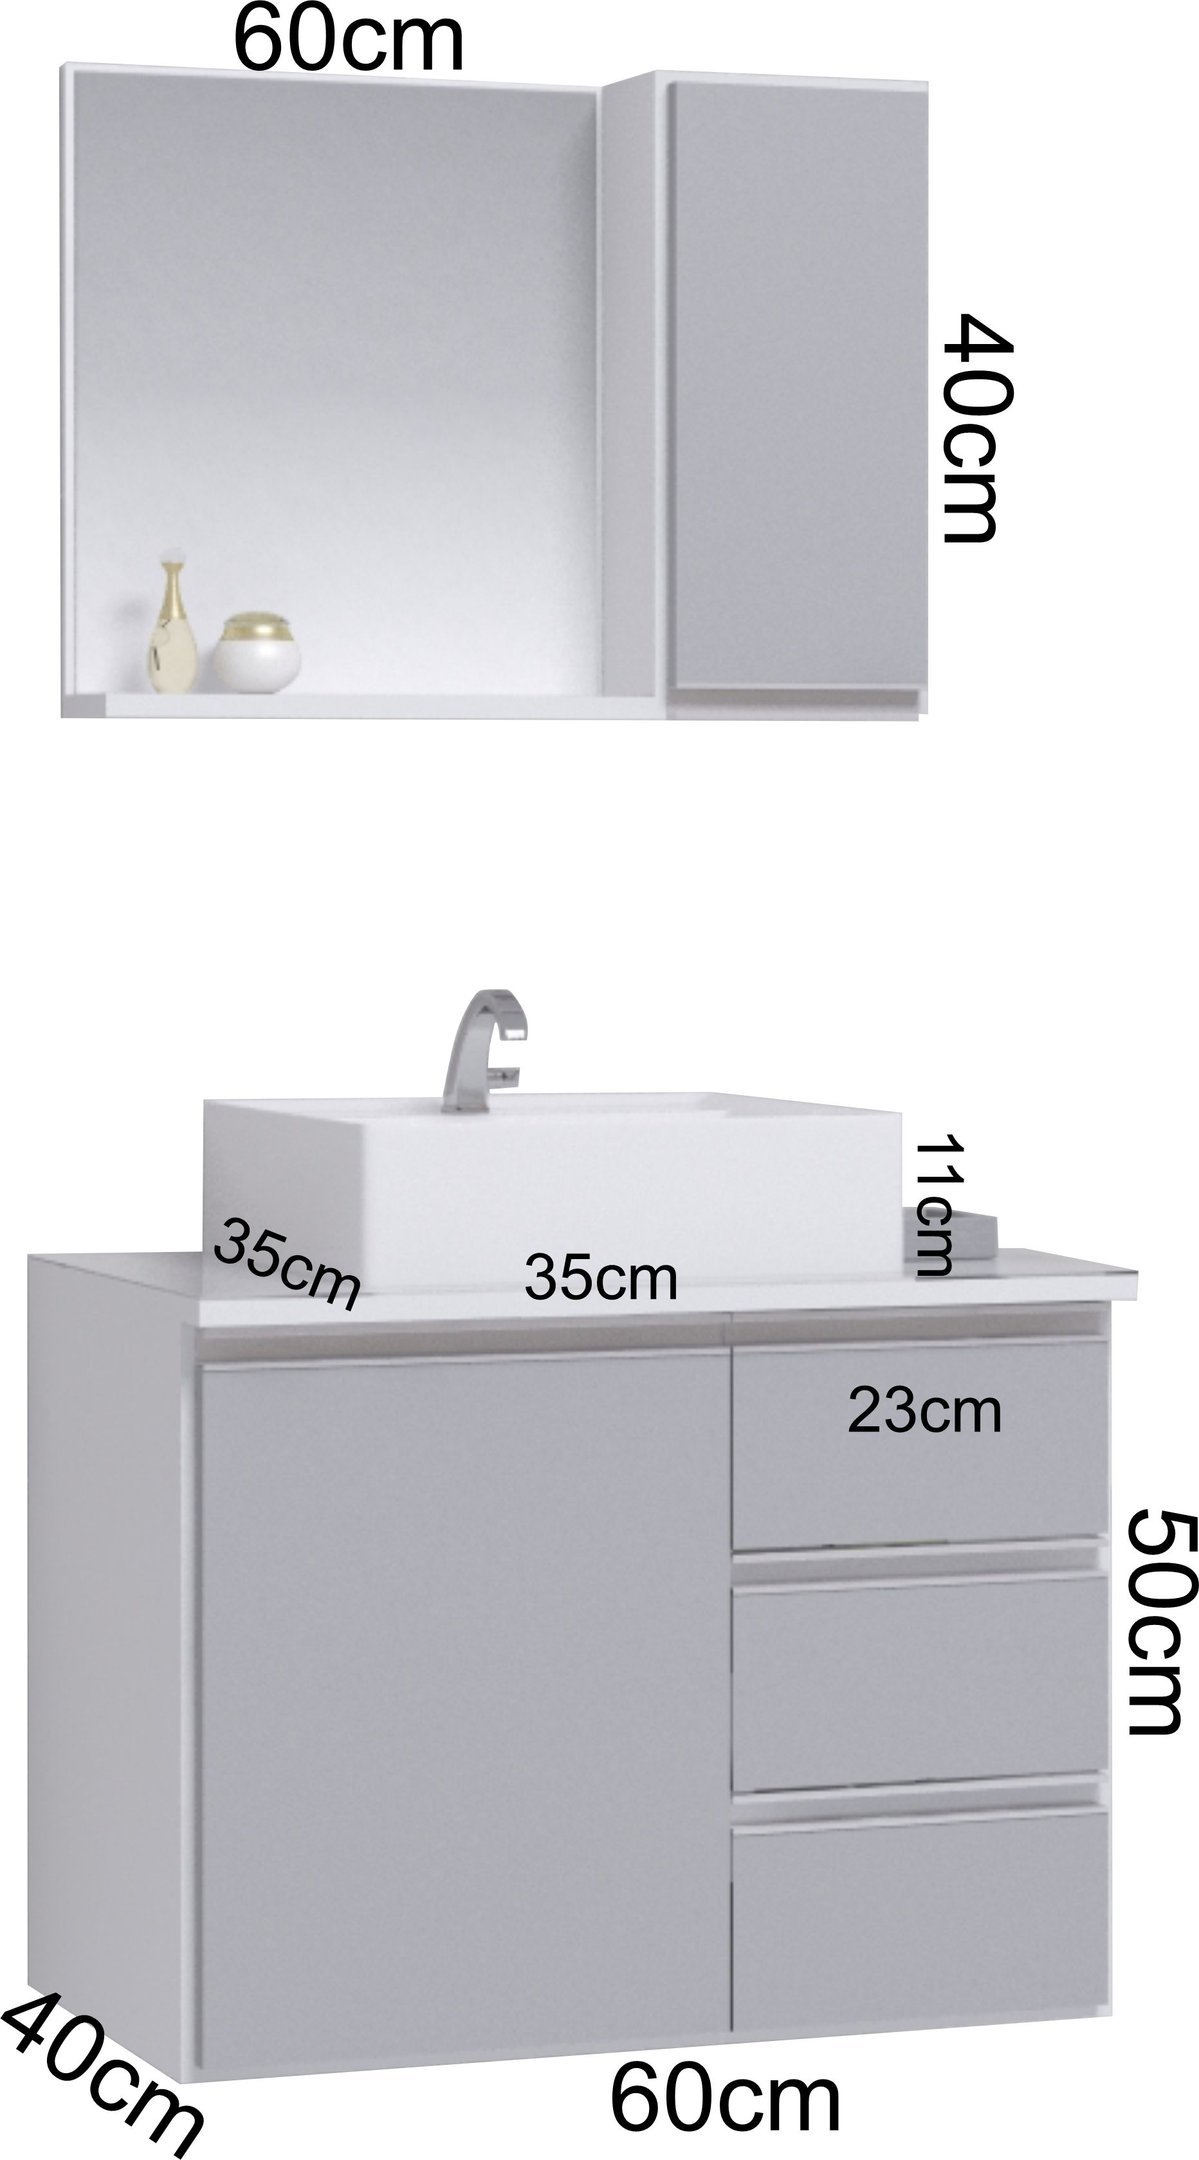 Conjunto Gabinete Banheiro Completo Prisma 60cm - Branco / Cinza COM TAMPO VIDRO - 3